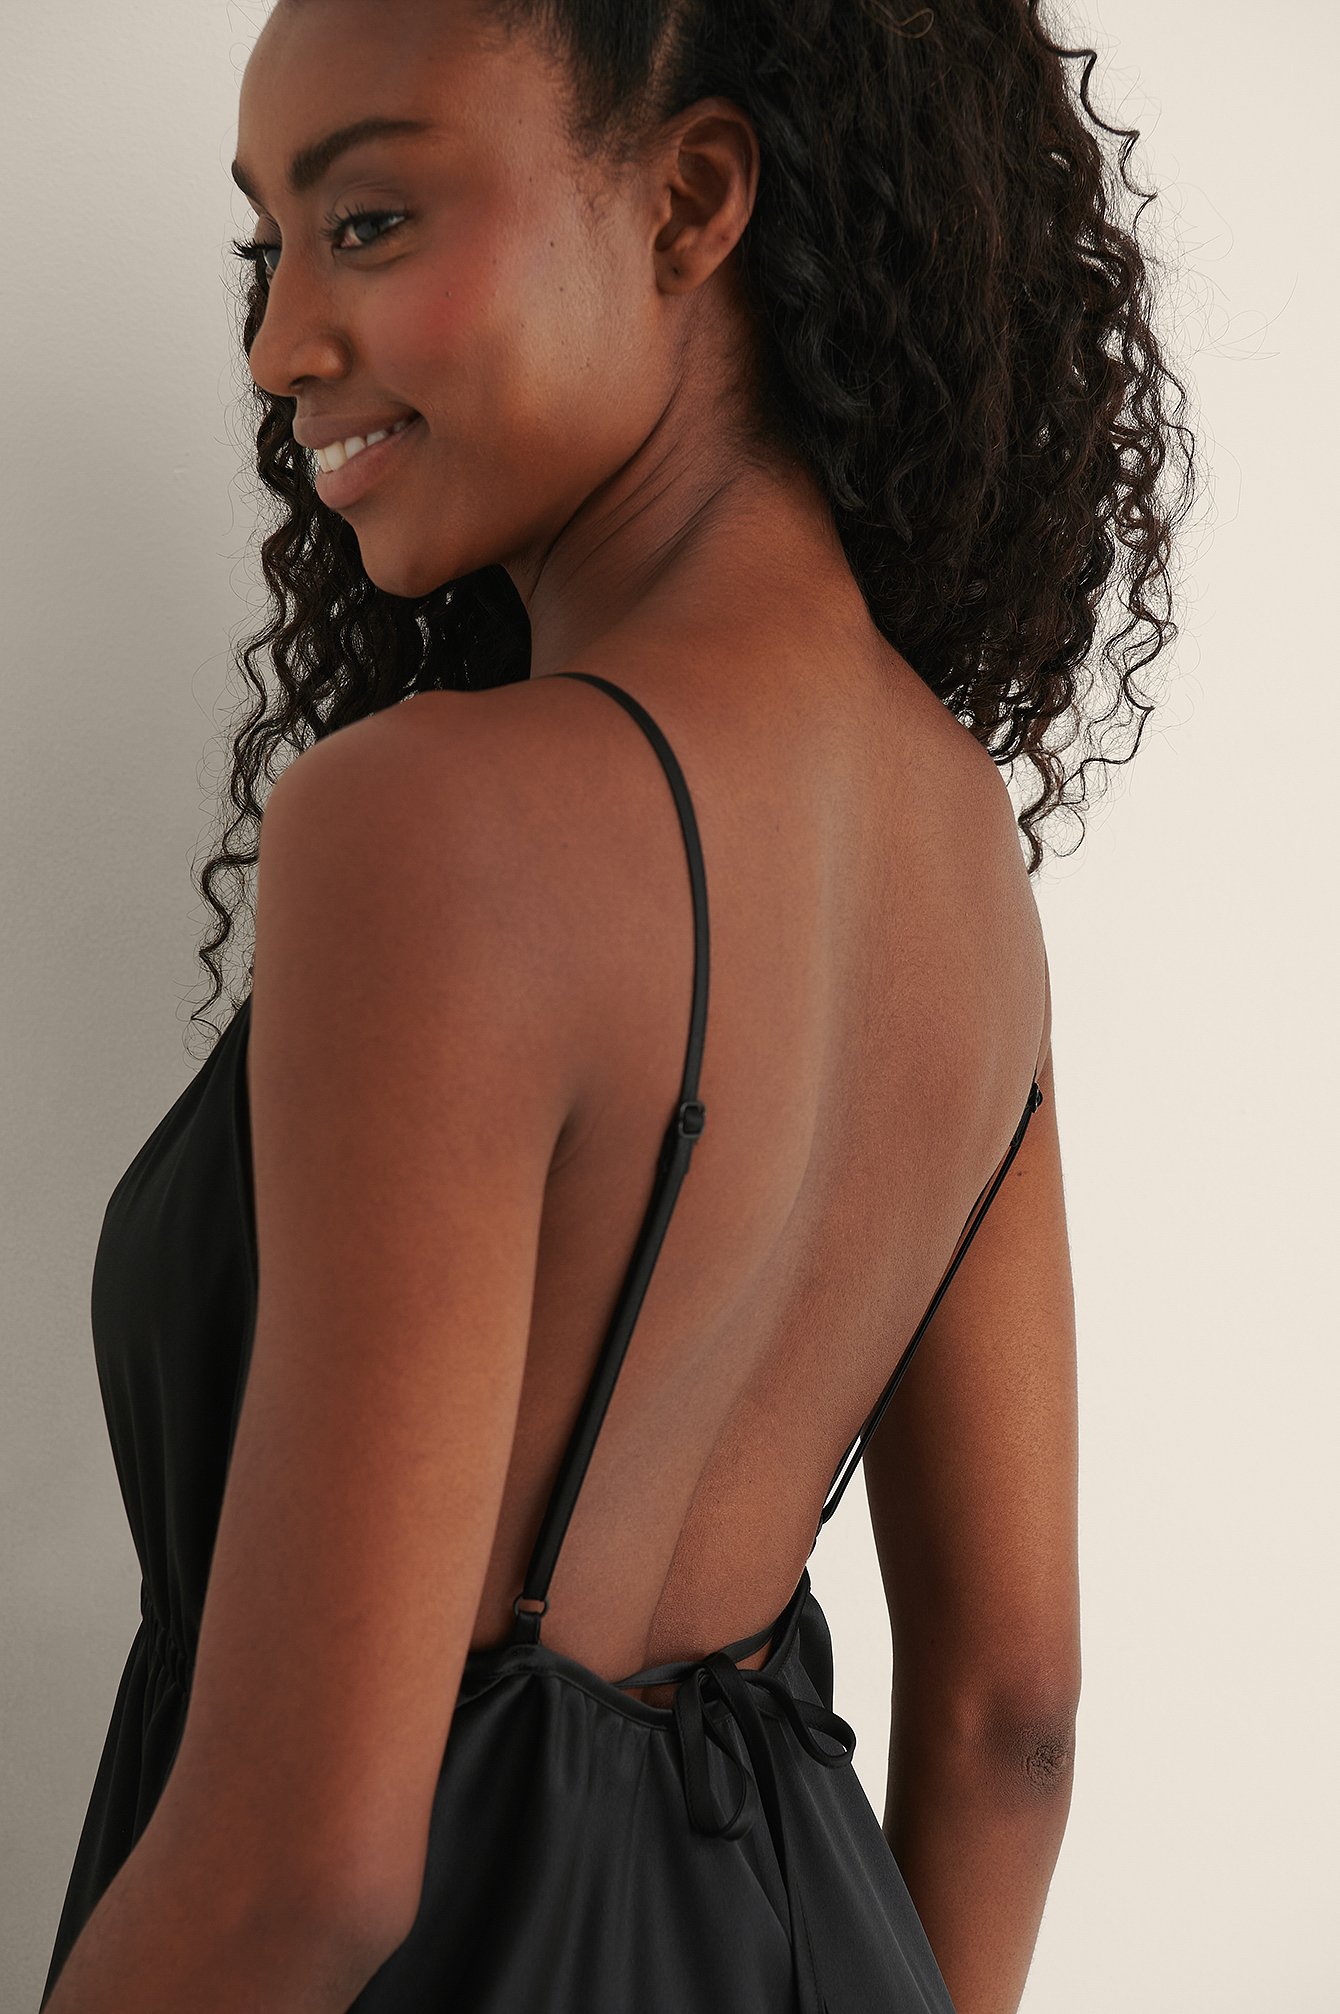 Black Minikleid mit einem offenen Rücken-Design